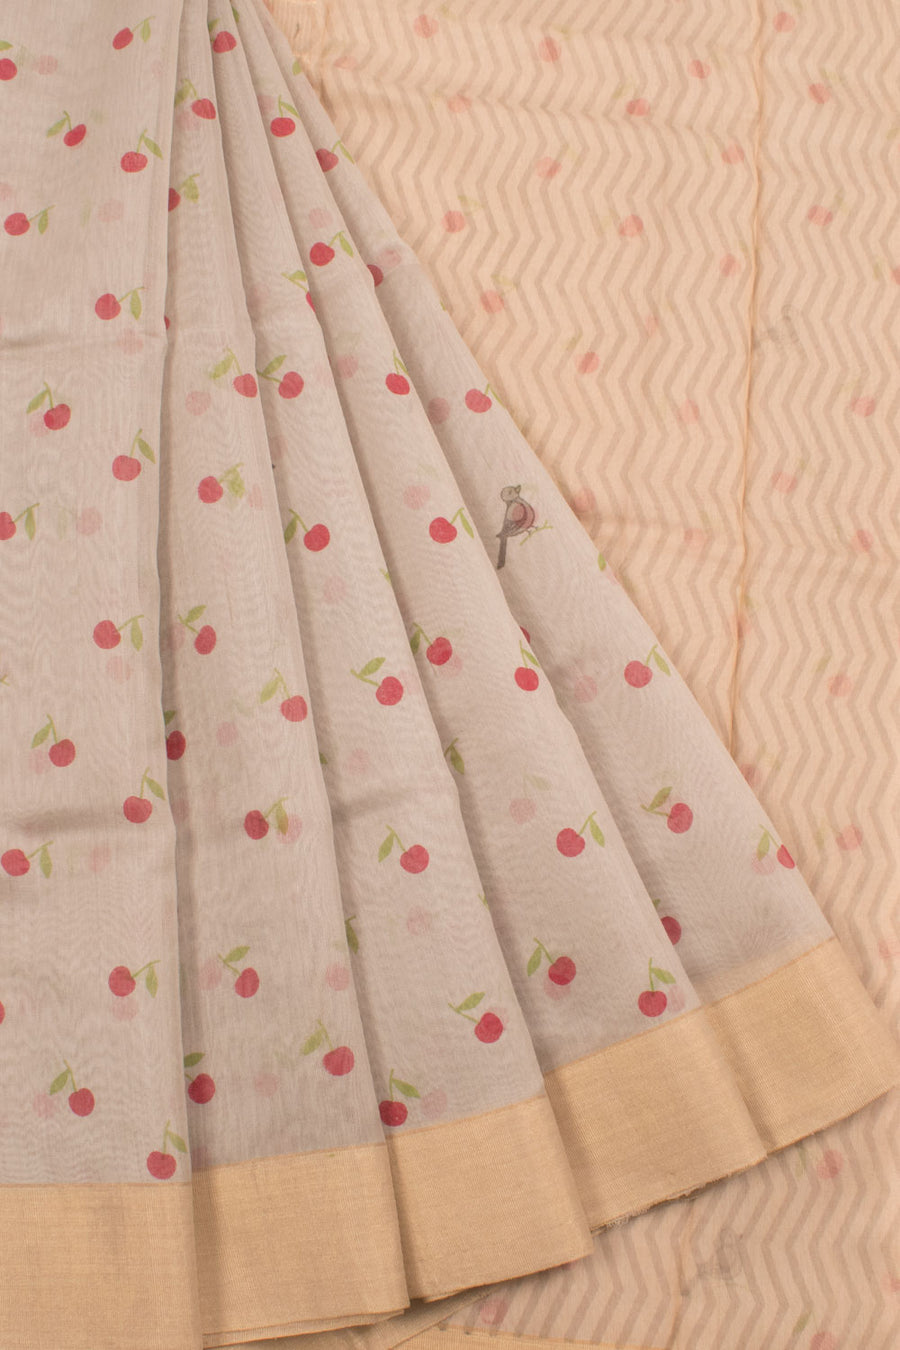 Handwoven Chanderi Silk Cotton Saree with Cherry and Bird Motifs